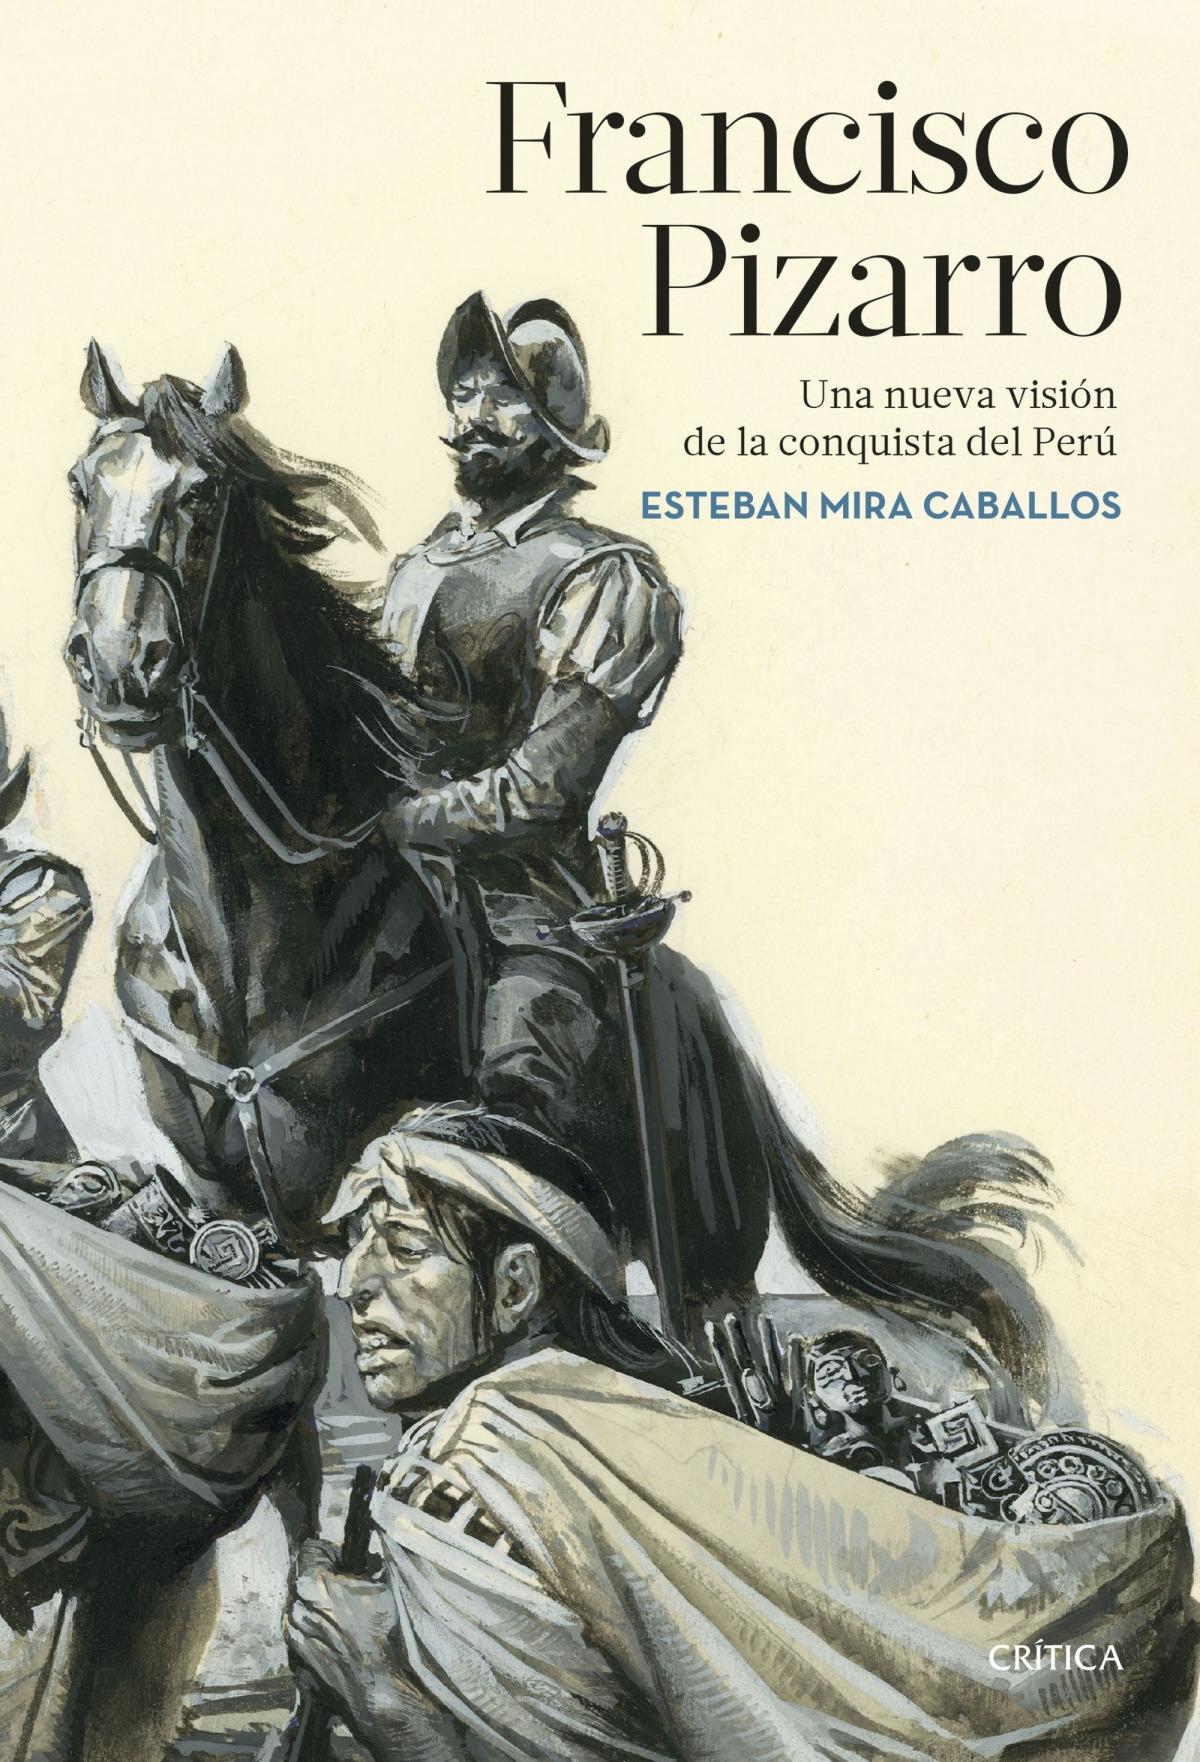 Francisco Pizarro "Una nueva visión de la conquista del Perú"